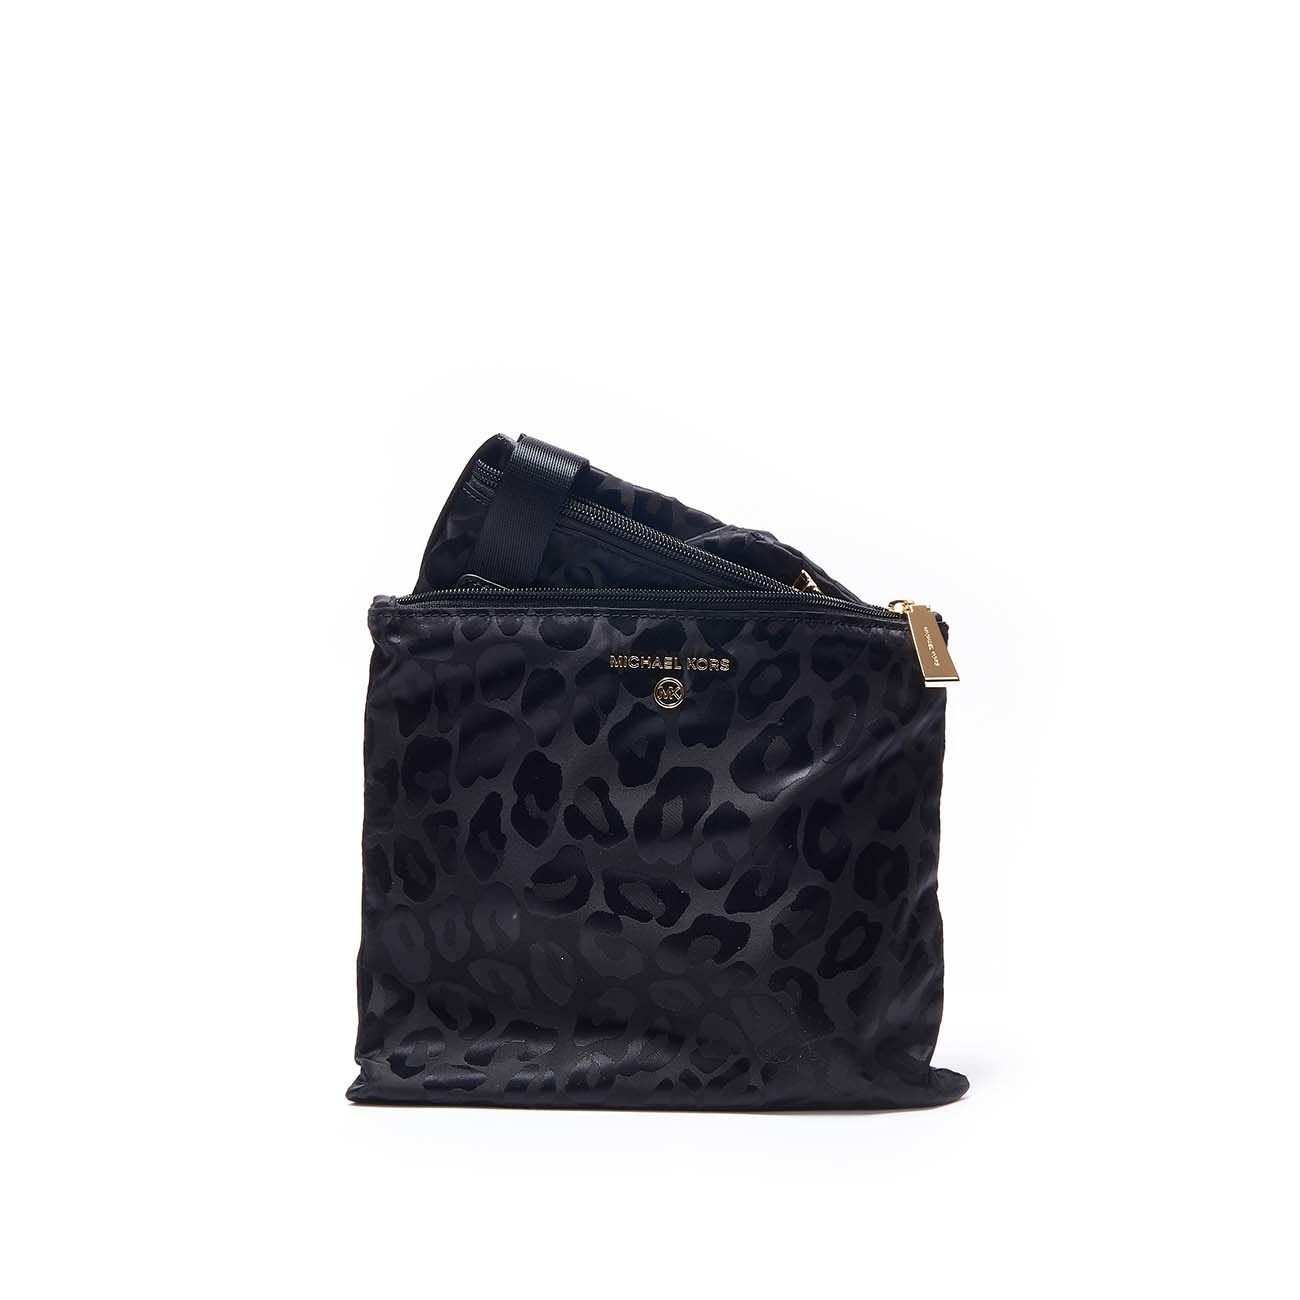 Michael+Kors+Jet+Set+Tote+Handbag+Black for sale online